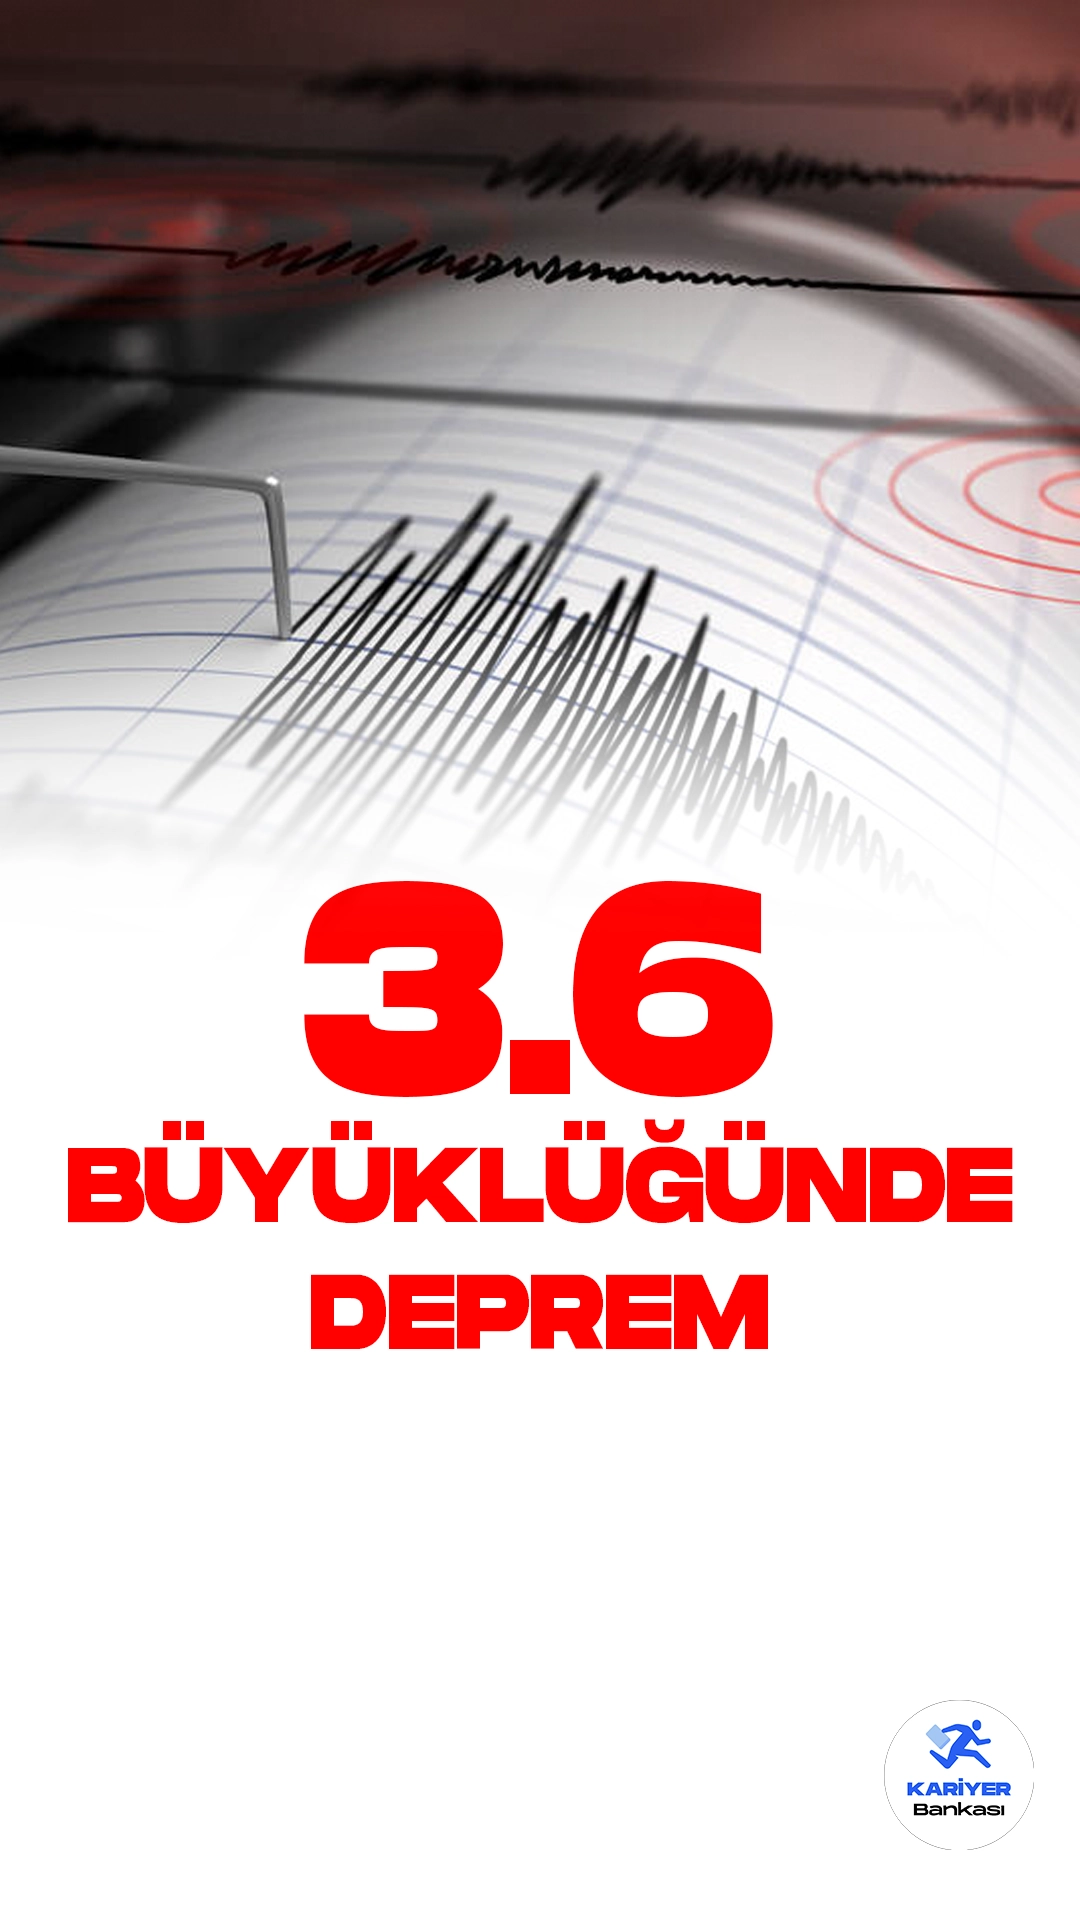 Bursa'da 3.6 Büyüklüğünde Deprem Oldu. Kandilli Rasathanesi Deprem Araştırma Enstitüsü tarafından yayımlanan son dakika duyurusuna göre, Bursa ilinin Mustafakemalpaşa ilçesine bağlı Yukarıbalı mahallesinde 3.6 büyüklüğünde deprem meydana geldiği aktarıldı.